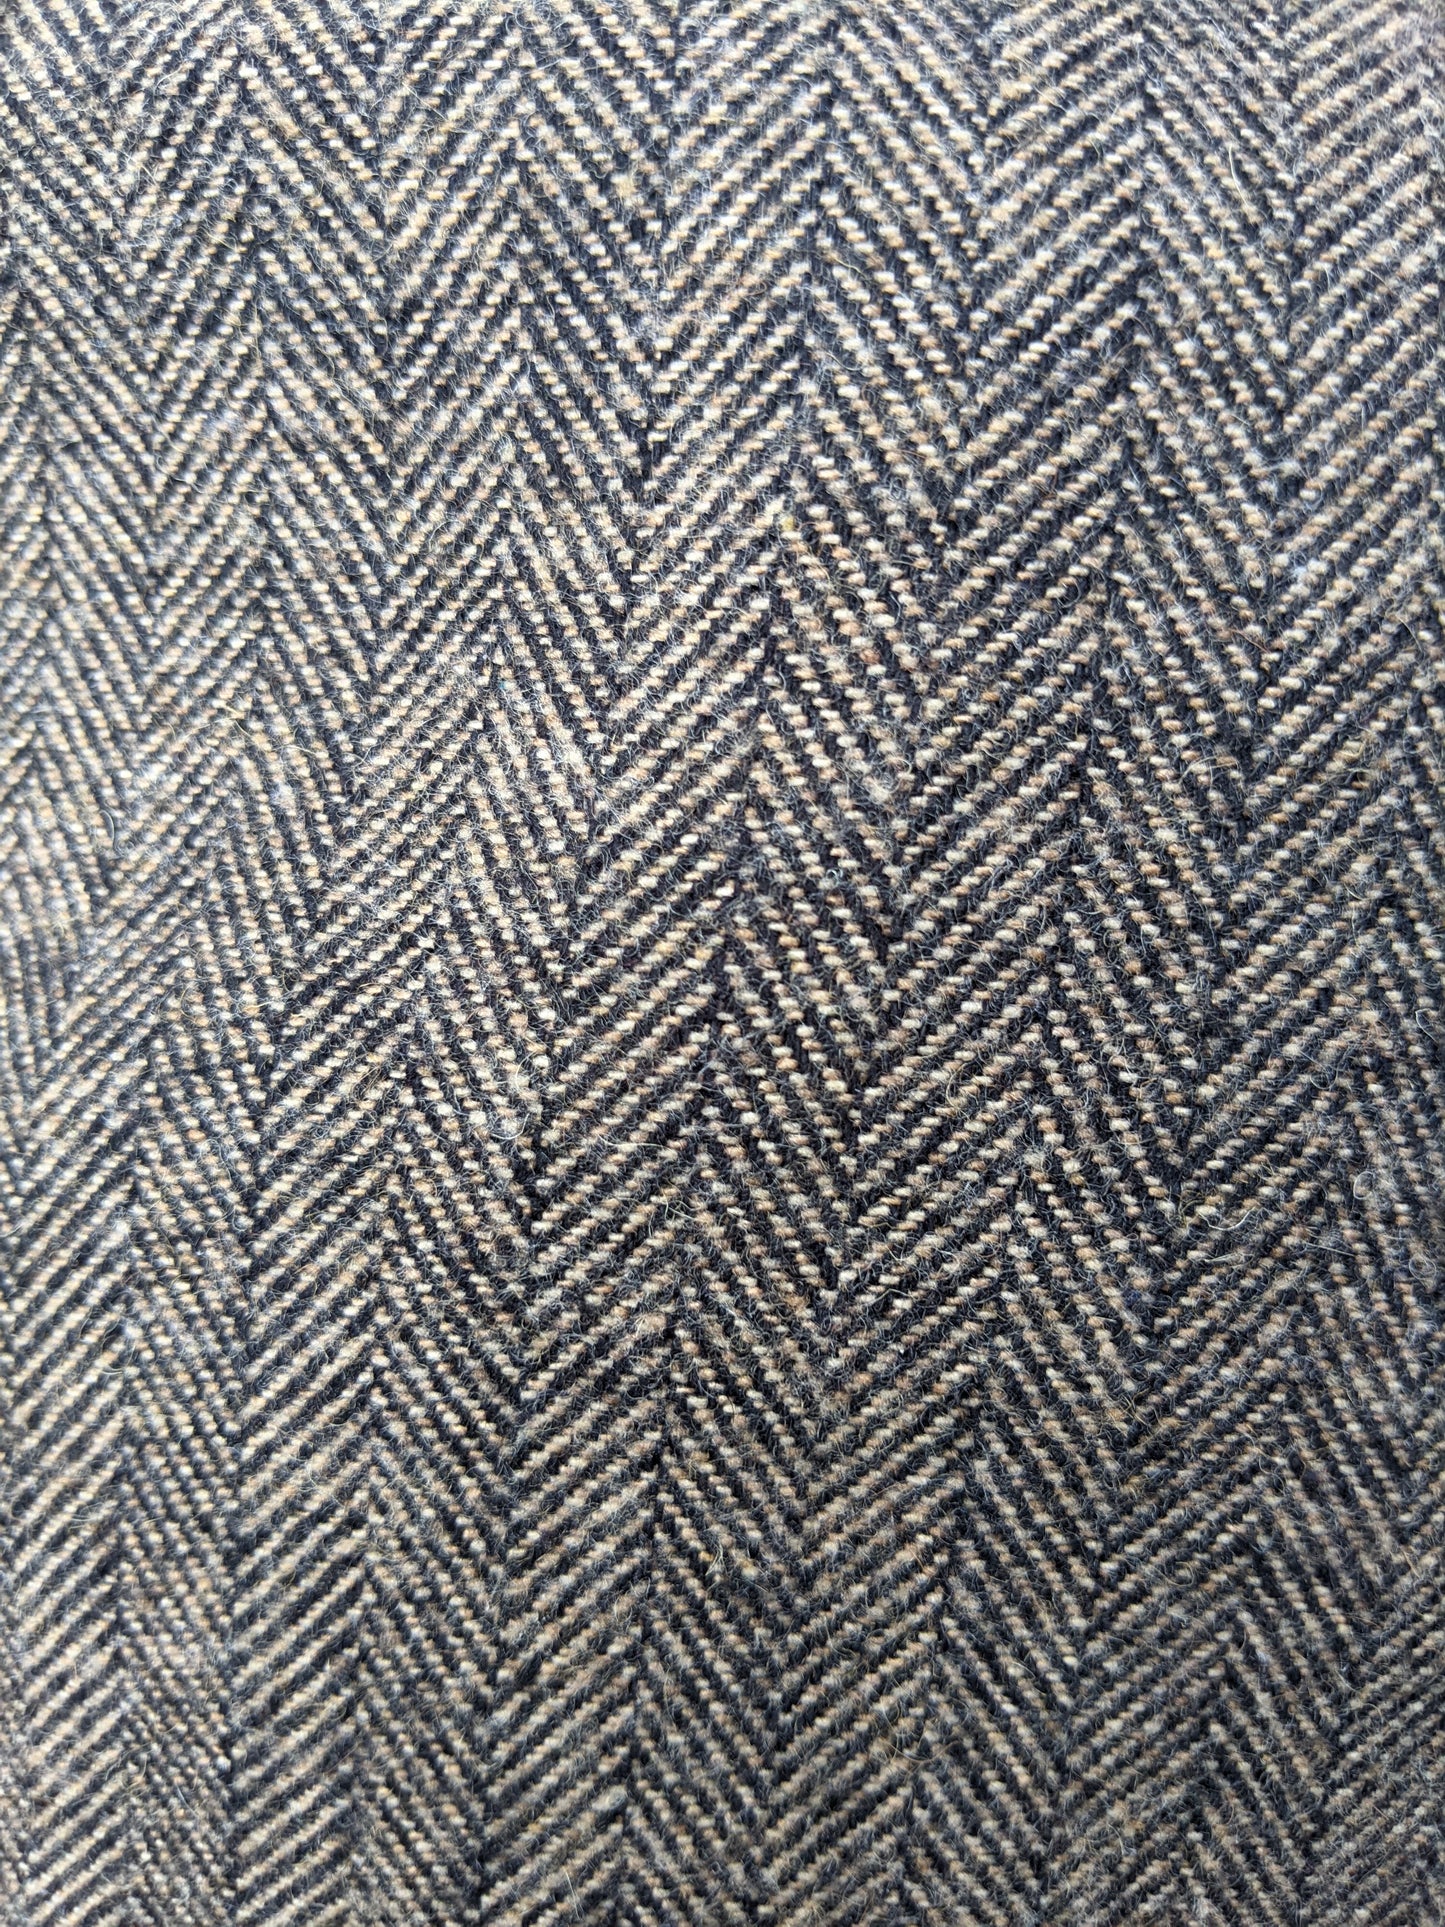 Wool Flat Cap - Tweed Brown